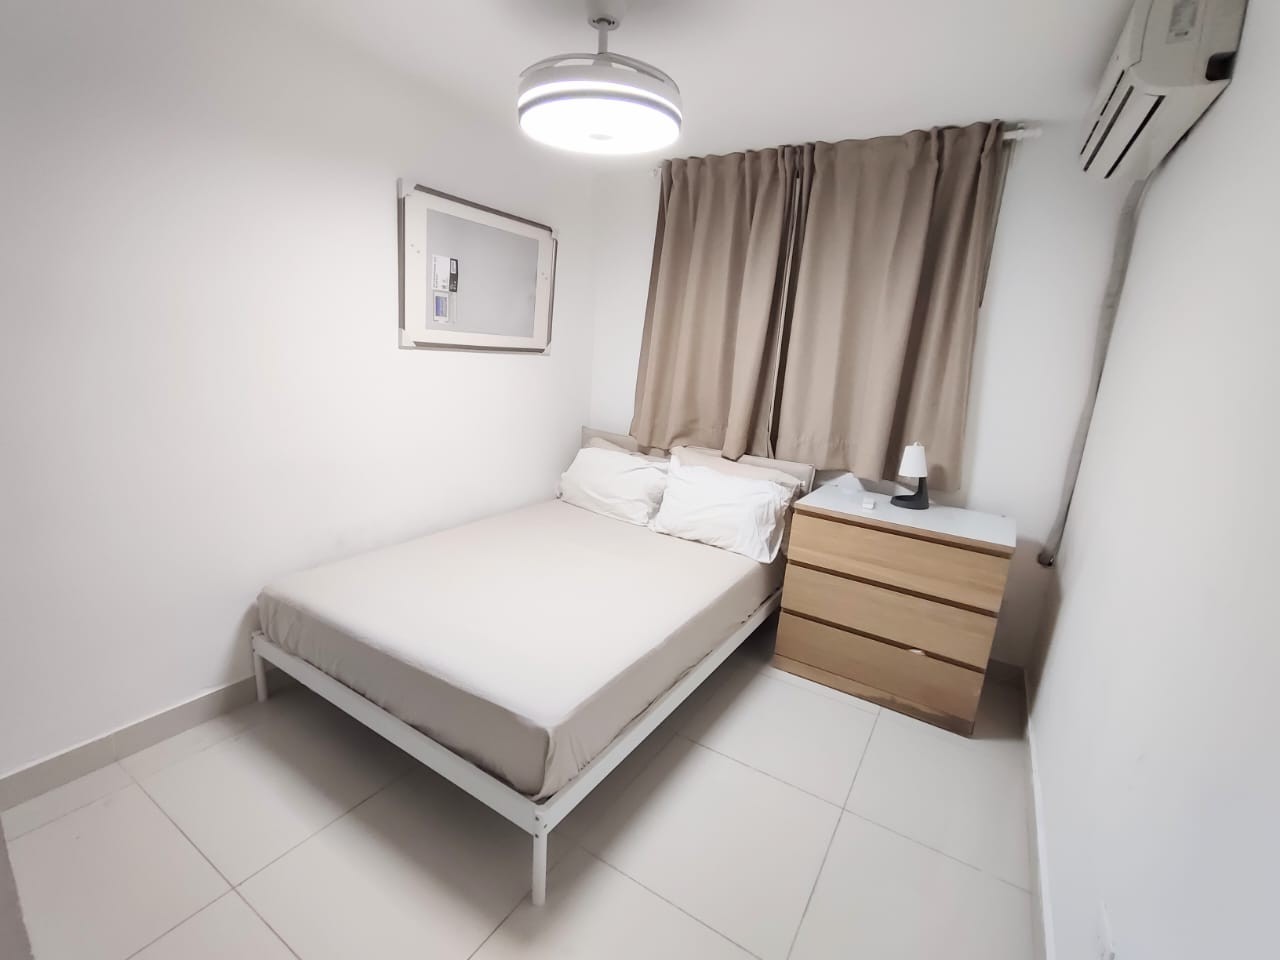 apartamentos - Apartamento en Venta Amueblado 
Mirador Norte
USD175,000
Mantenimiento:RD$6,000 7